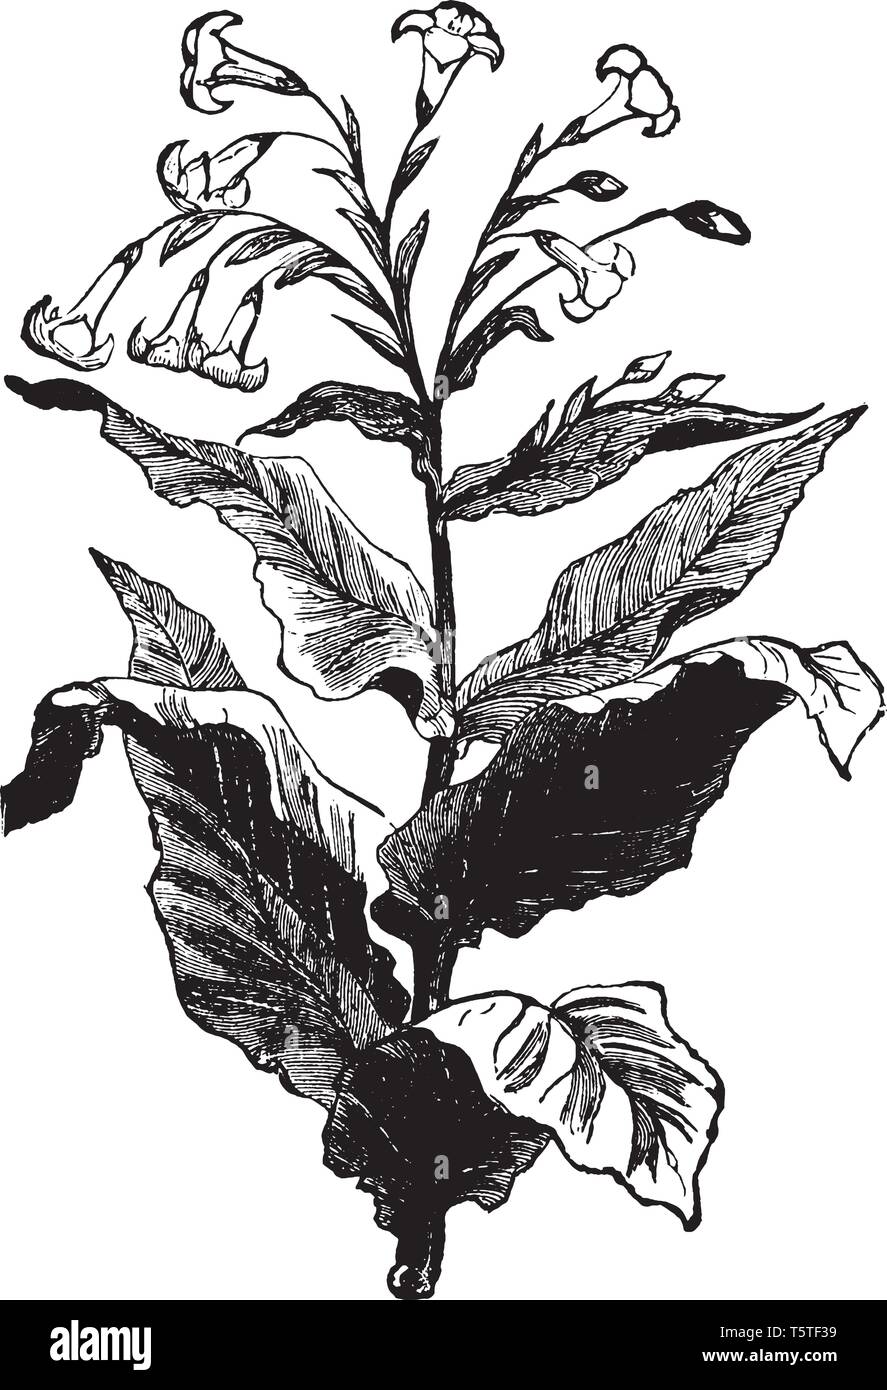 Plante de tabac est plante en fleurs. Les feuilles de tabac sont principalement utilisés pour les fumeurs de cigarettes, cigares et tabac à pipe, vintage dessin ou gravure Illustration de Vecteur